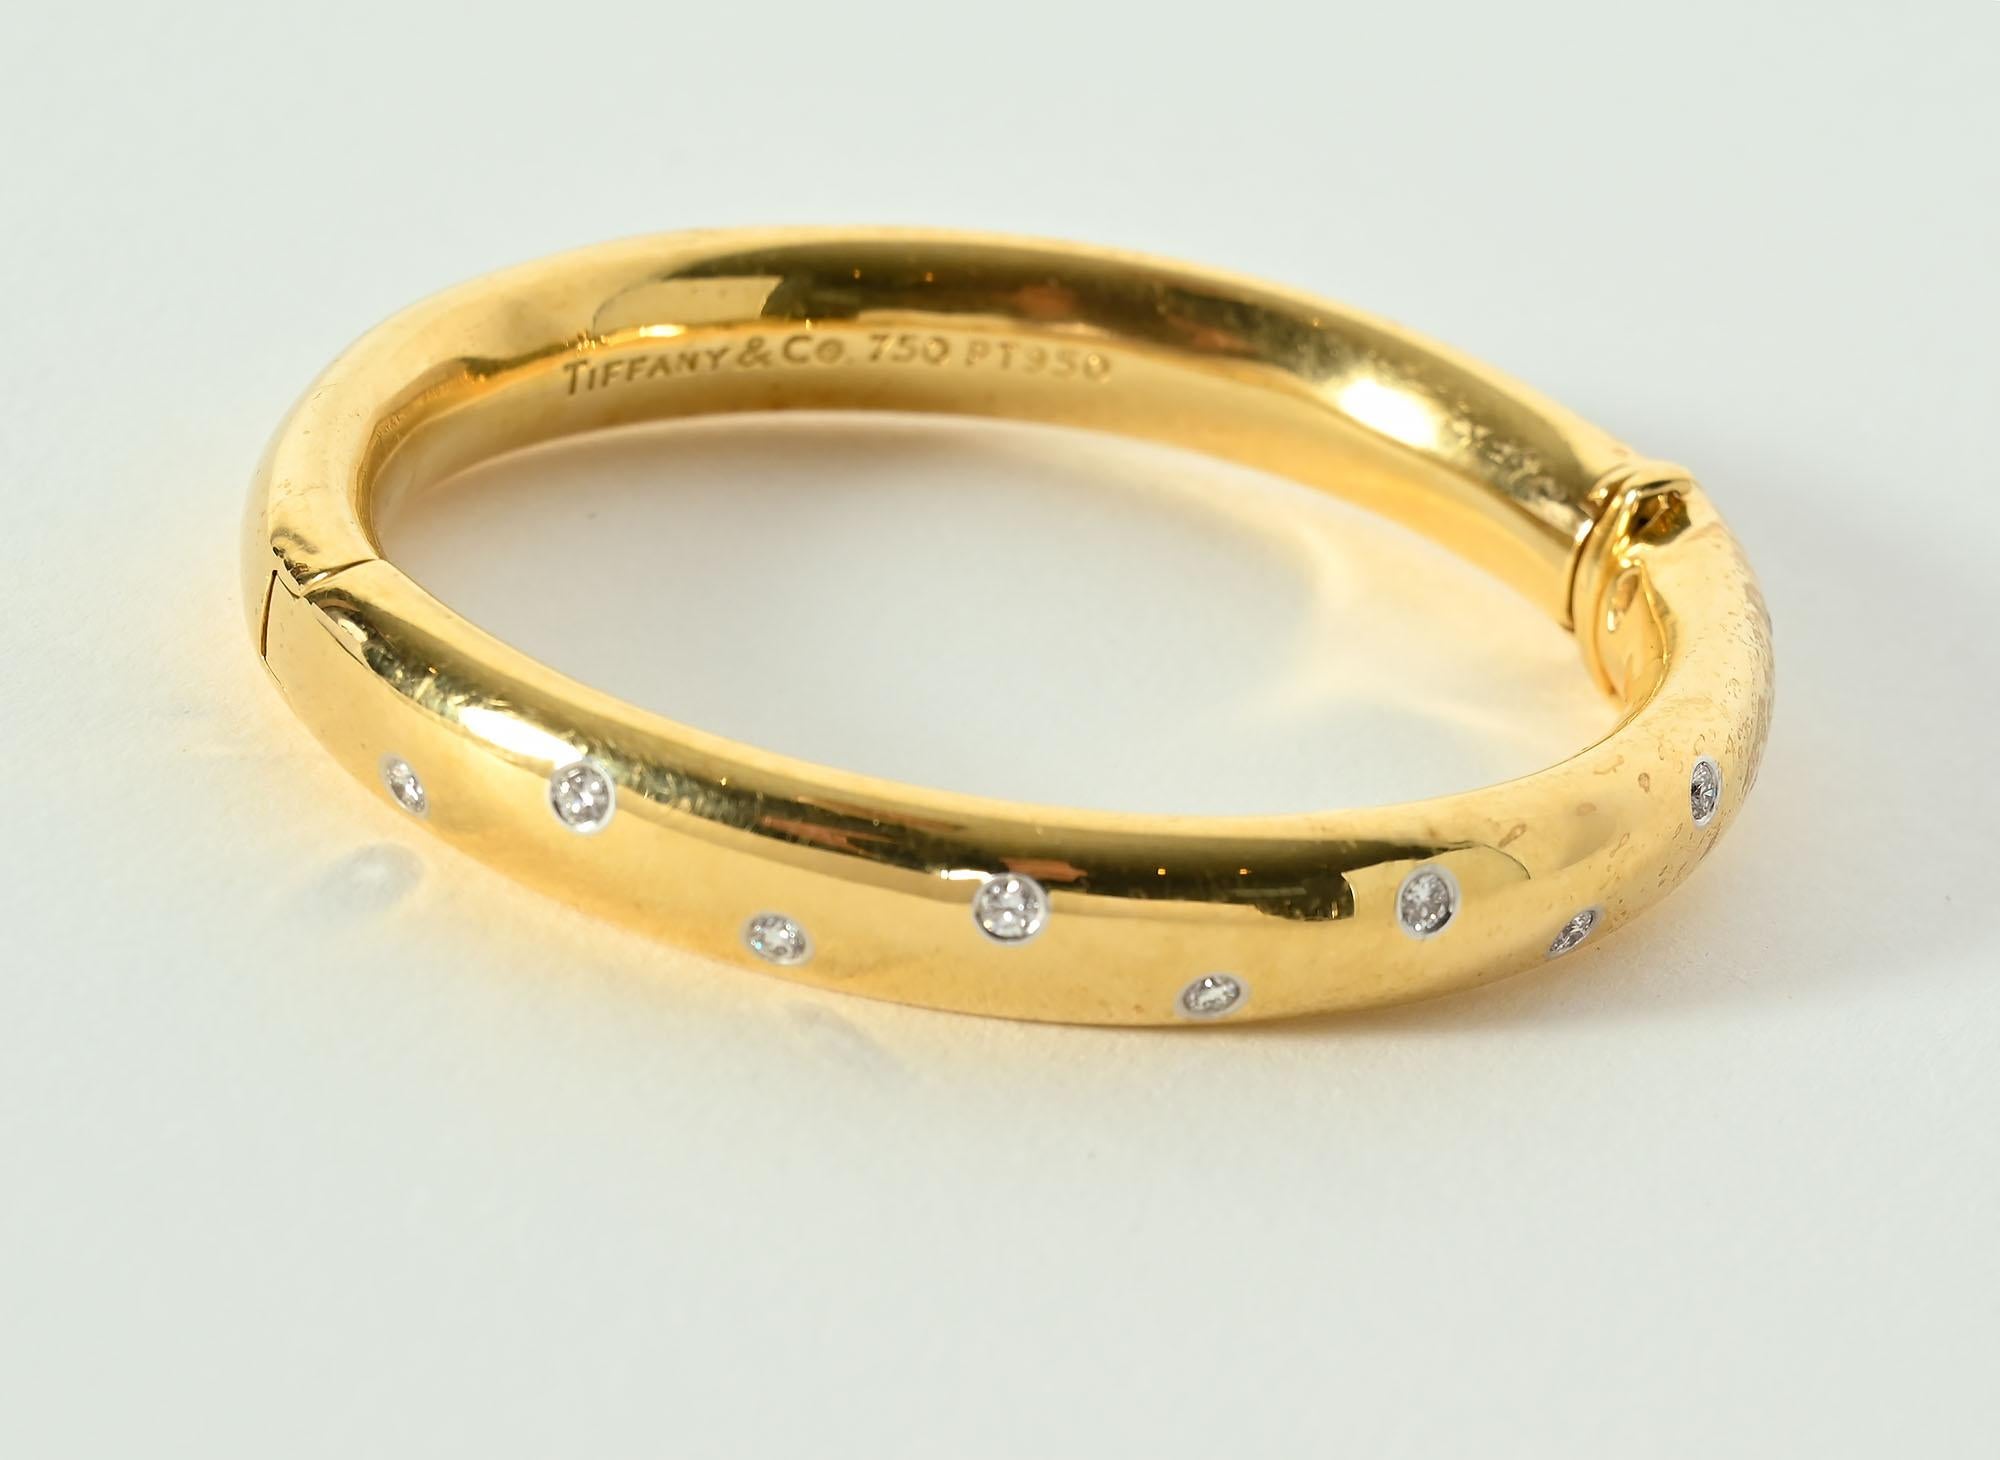 Le bracelet-bracelet Tiffany Etoile (étoile) brille de 10 diamants pour le ciel nocturne. Les pierres rondes de taille brillante ont un poids total d'environ 0,40 carats.
Ce bracelet populaire n'est plus produit. Le bracelet est doté d'un fermoir